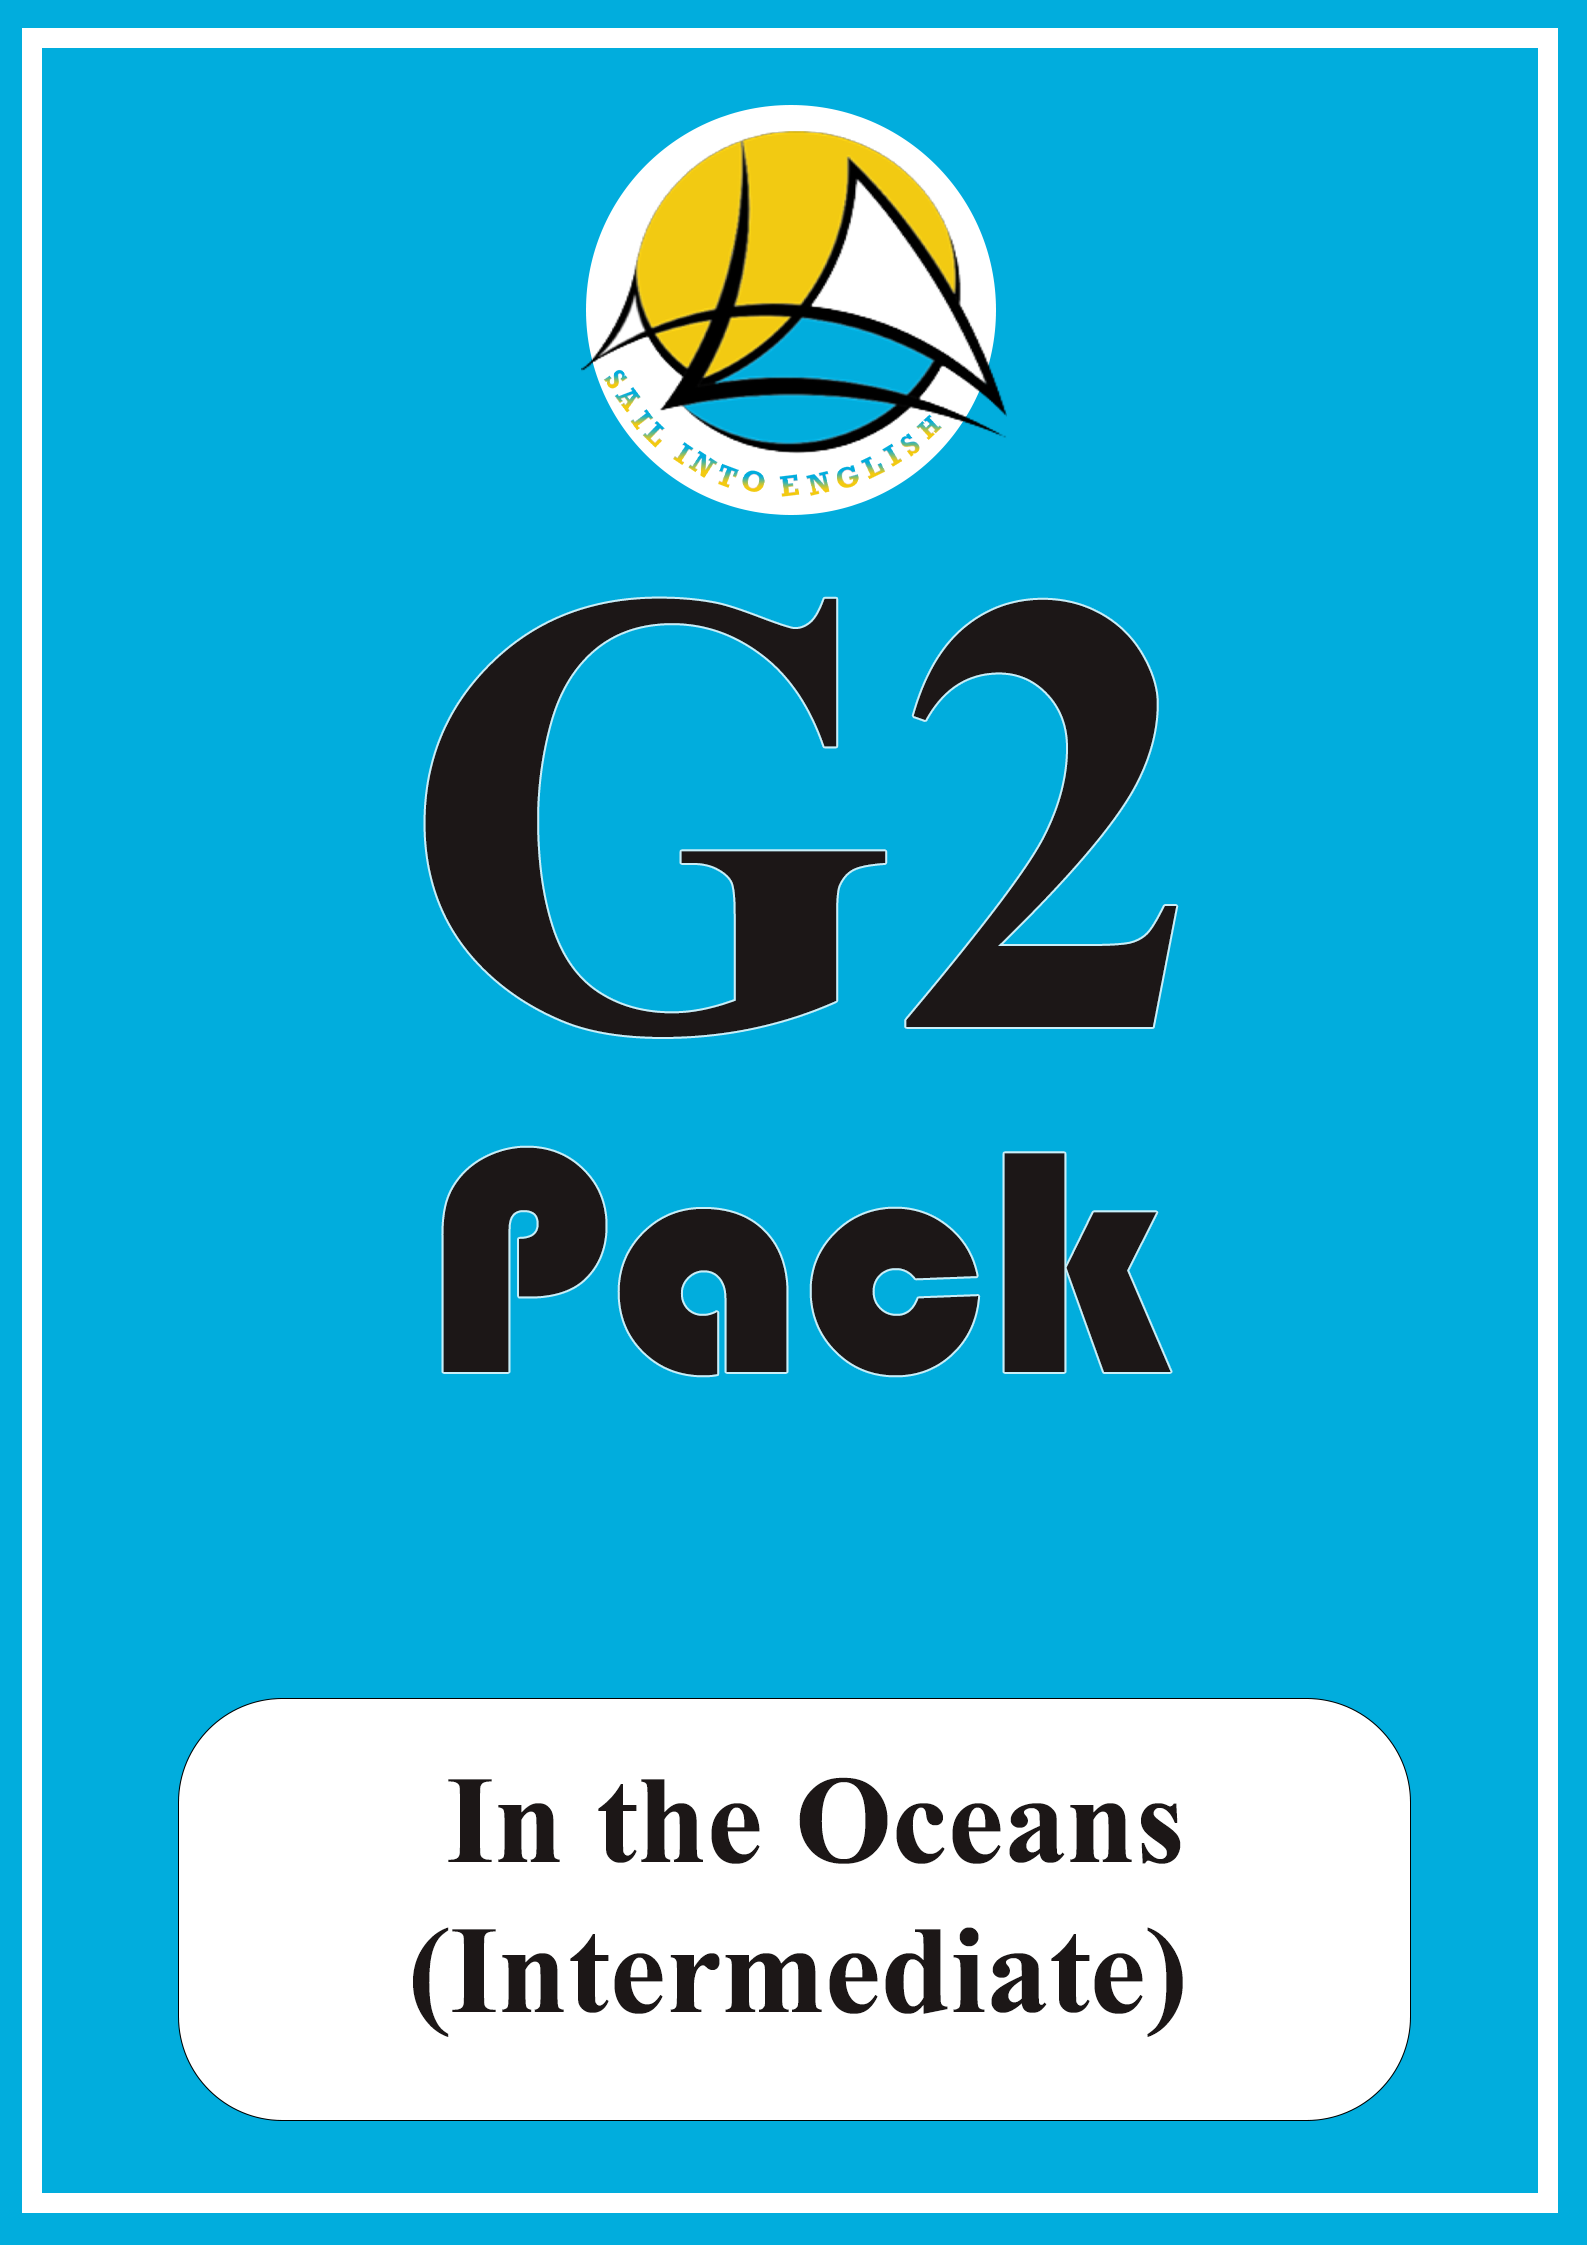 G2 PACK